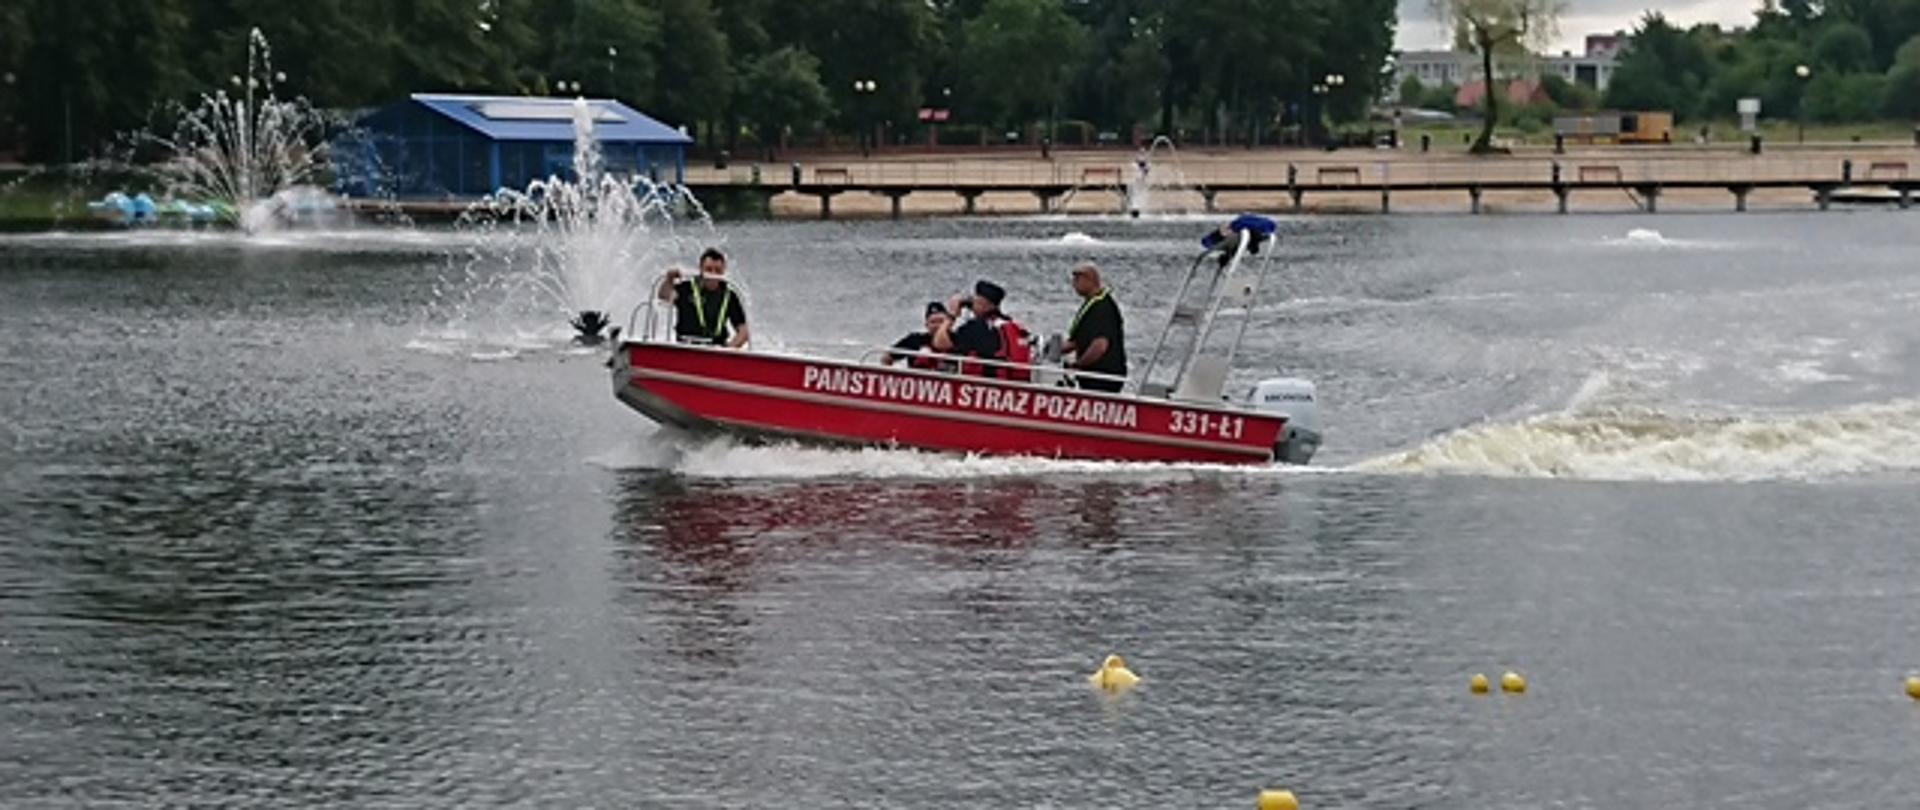 Zdjęcie wykonane na terenie zbiornika wodnego „Borki” w Radomiu. Na zdjęciu widać łódź ratowniczą należąca do Komendy Miejskiej Państwowej Straży Pożarnej w Radomiu. Łódź w kolorze czerwono – srebrnym. Na boku posiada biały napis Państwowa Straż Pożarna. W łodzi znajduje się mieszany patrol złożony z Policjantów i funkcjonariuszy Państwowej Straży Pożarnej w Radomiu. Jeden z Policjantów w rękach trzyma lornetkę wypatrując niebezpiecznych zachowań. 